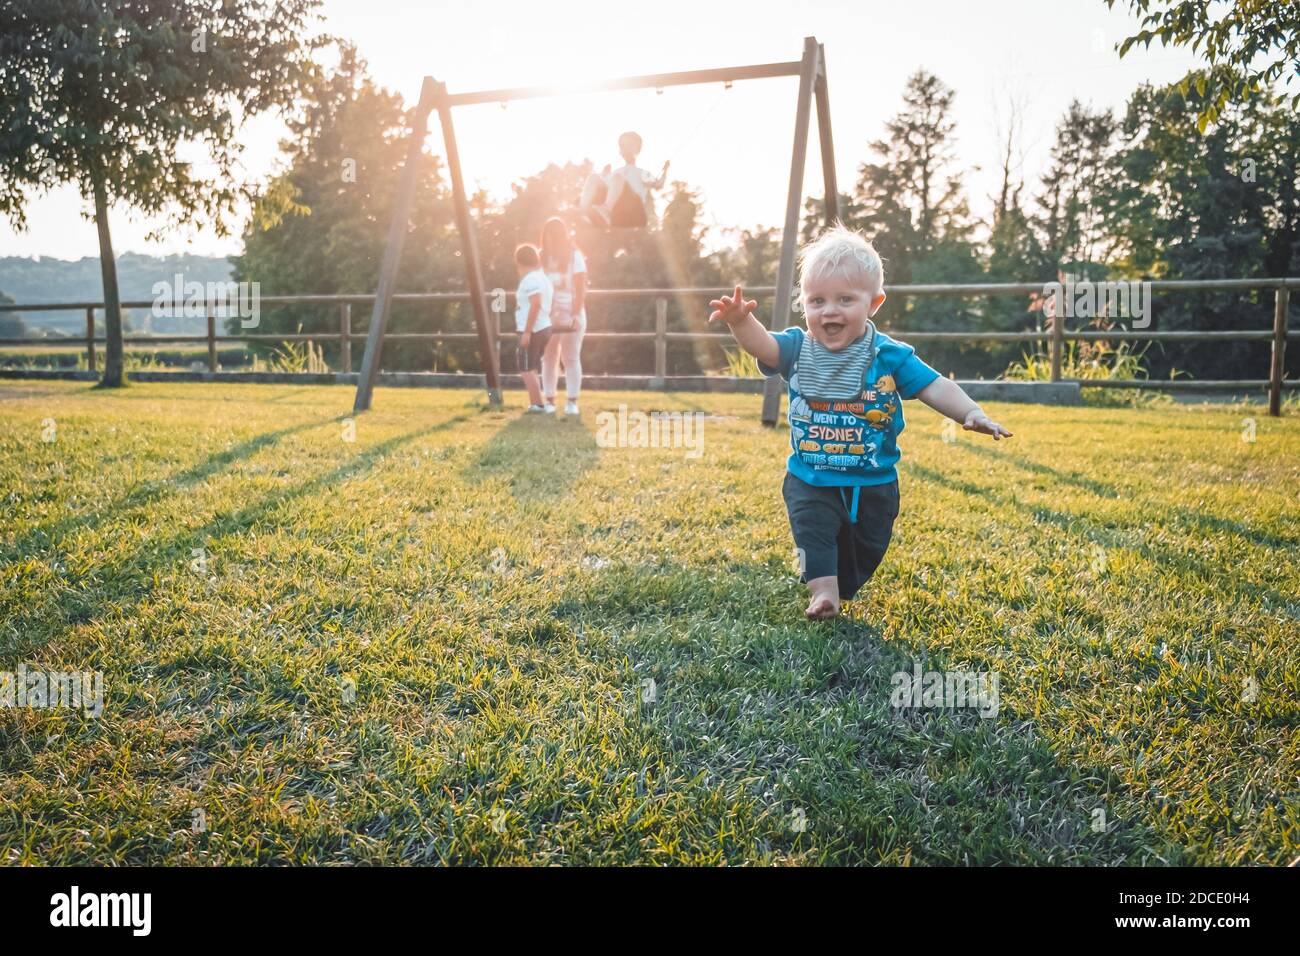 Ein einjähriger Junge läuft barfuß auf dem Spielplatz Ein schöner Frühlingstag - netter kleiner Junge, der seine nimmt Erste Schritte bei Sonnenuntergang - Lernen Sie Conce laufen Stockfoto